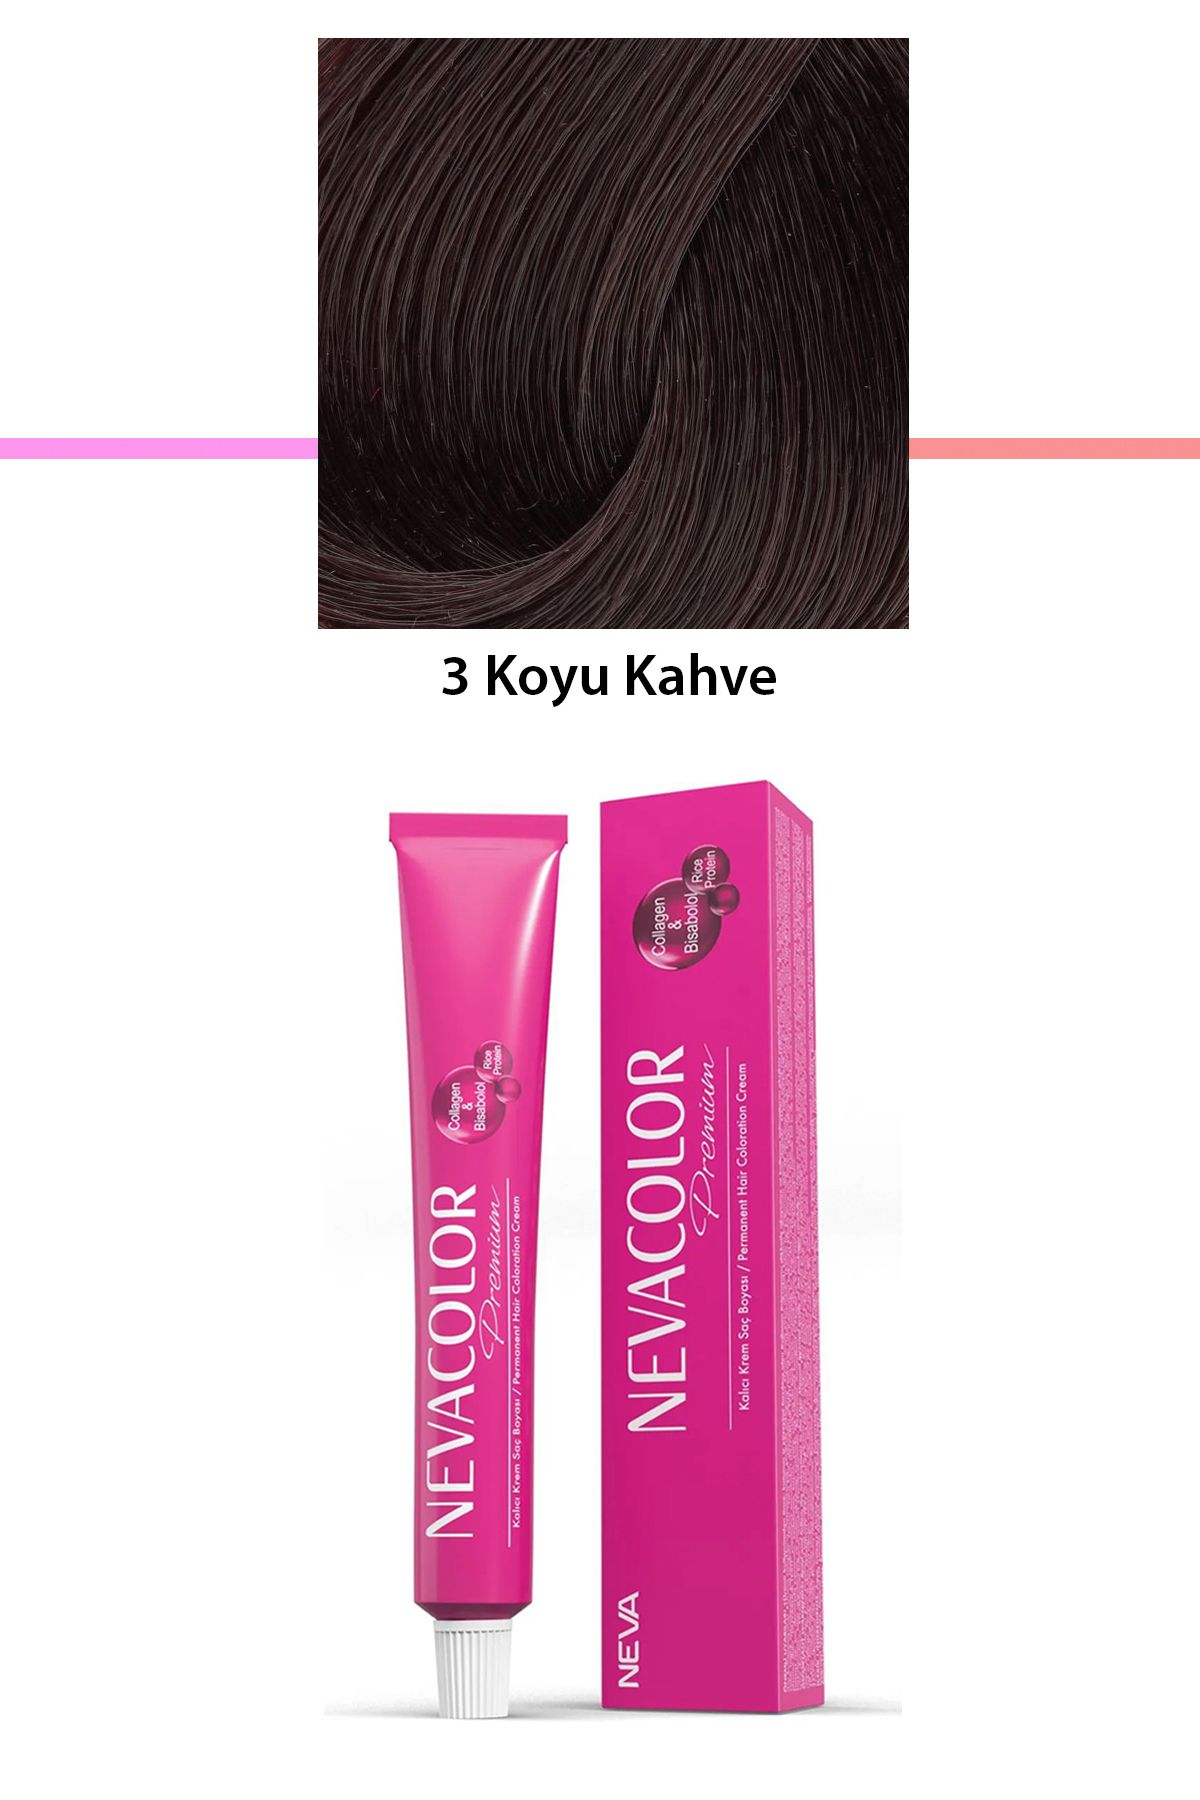 Neva Color Premium 3 Koyu Kahve - Kalıcı Krem Saç Boyası 50 g Tüp